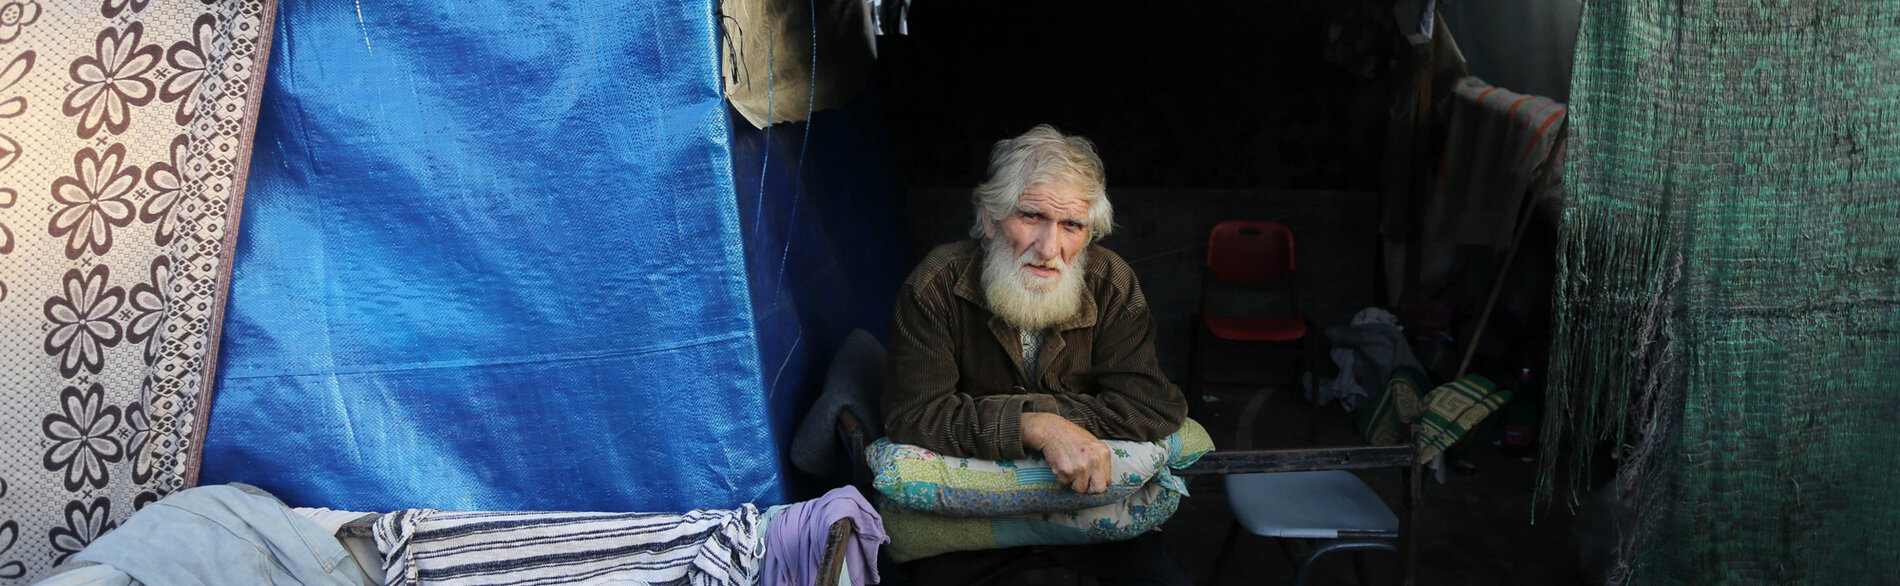 הקשישים בעזה, שמספרם כ-111,500, נתונים בסיכון הגבוה ביותר לסבול מרעב, התייבשות, מחלה, פציעה ומוות, מדווח ארגון HelpAge. קשיש פלסטיני עקור במחסה מאולתר. צילום: אונר"א